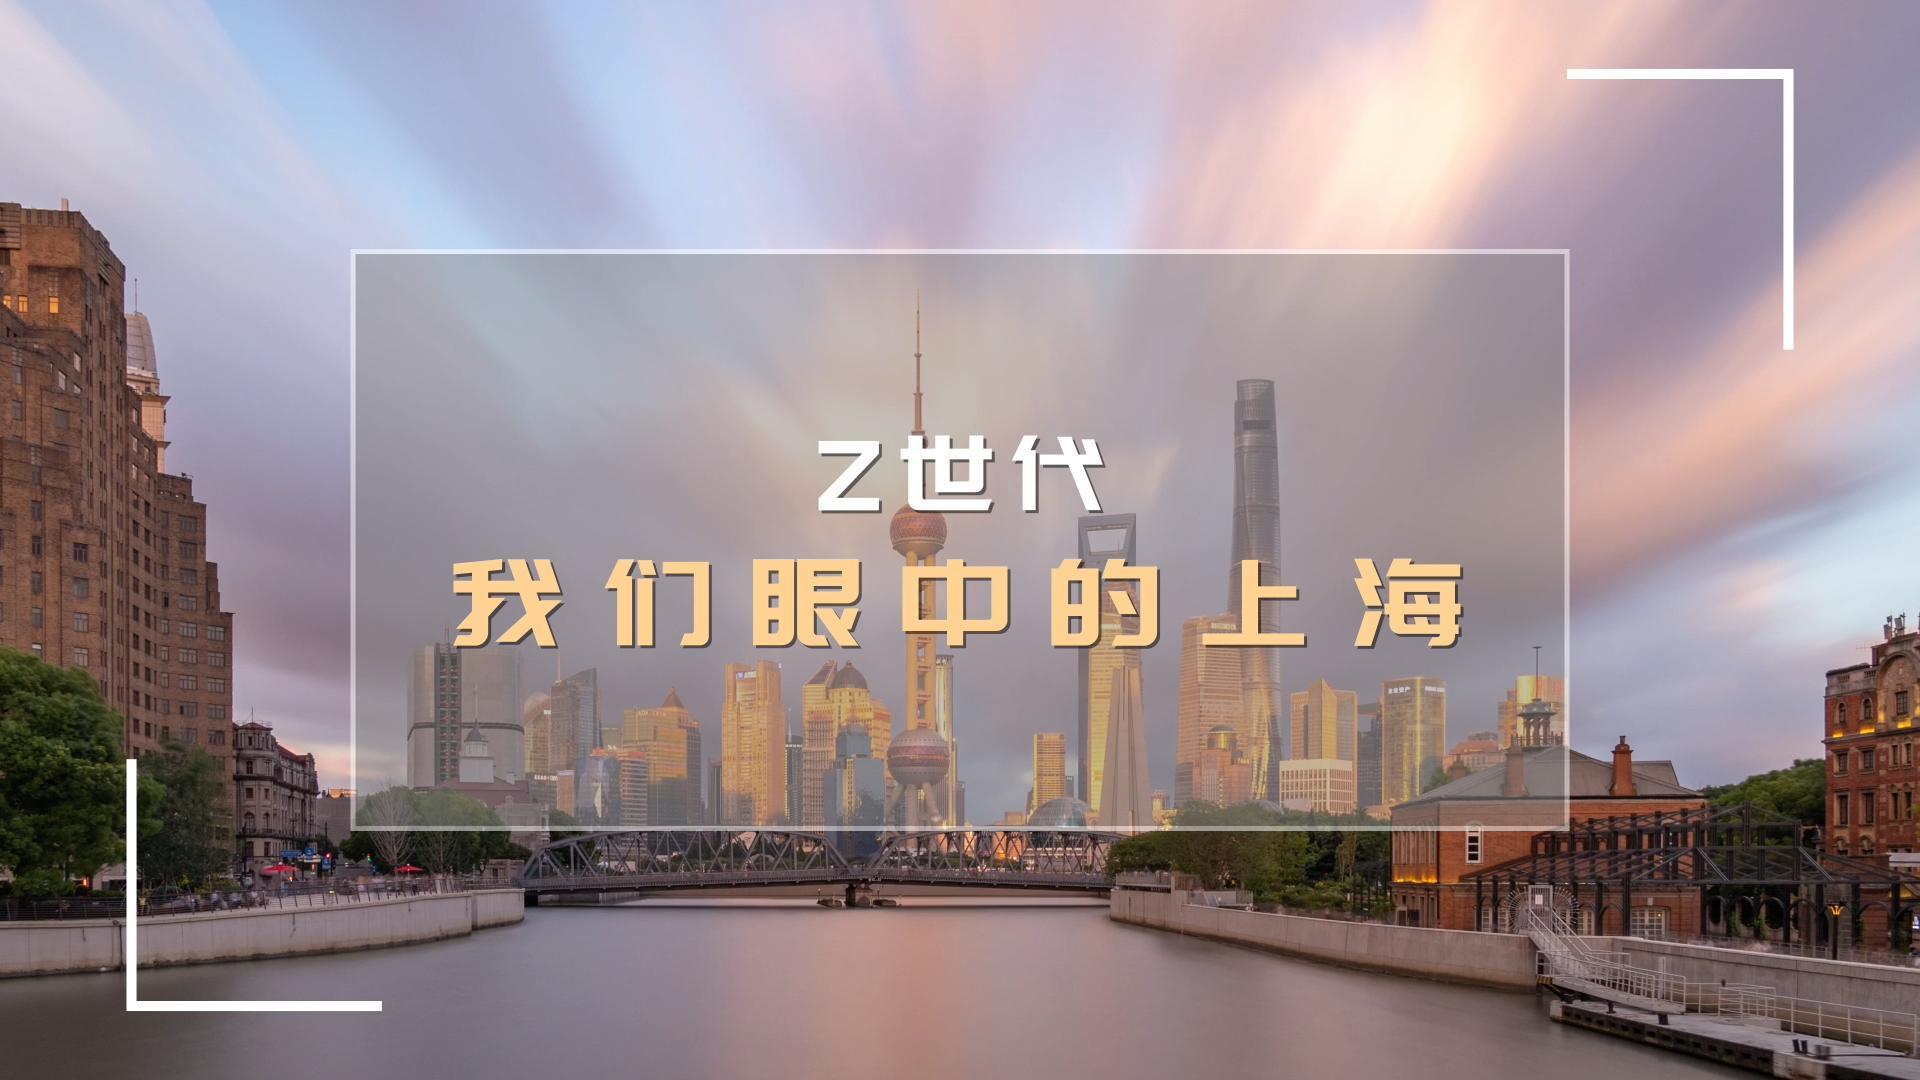 Z世代唱享中国·申城故事 今日启动优秀作品展播